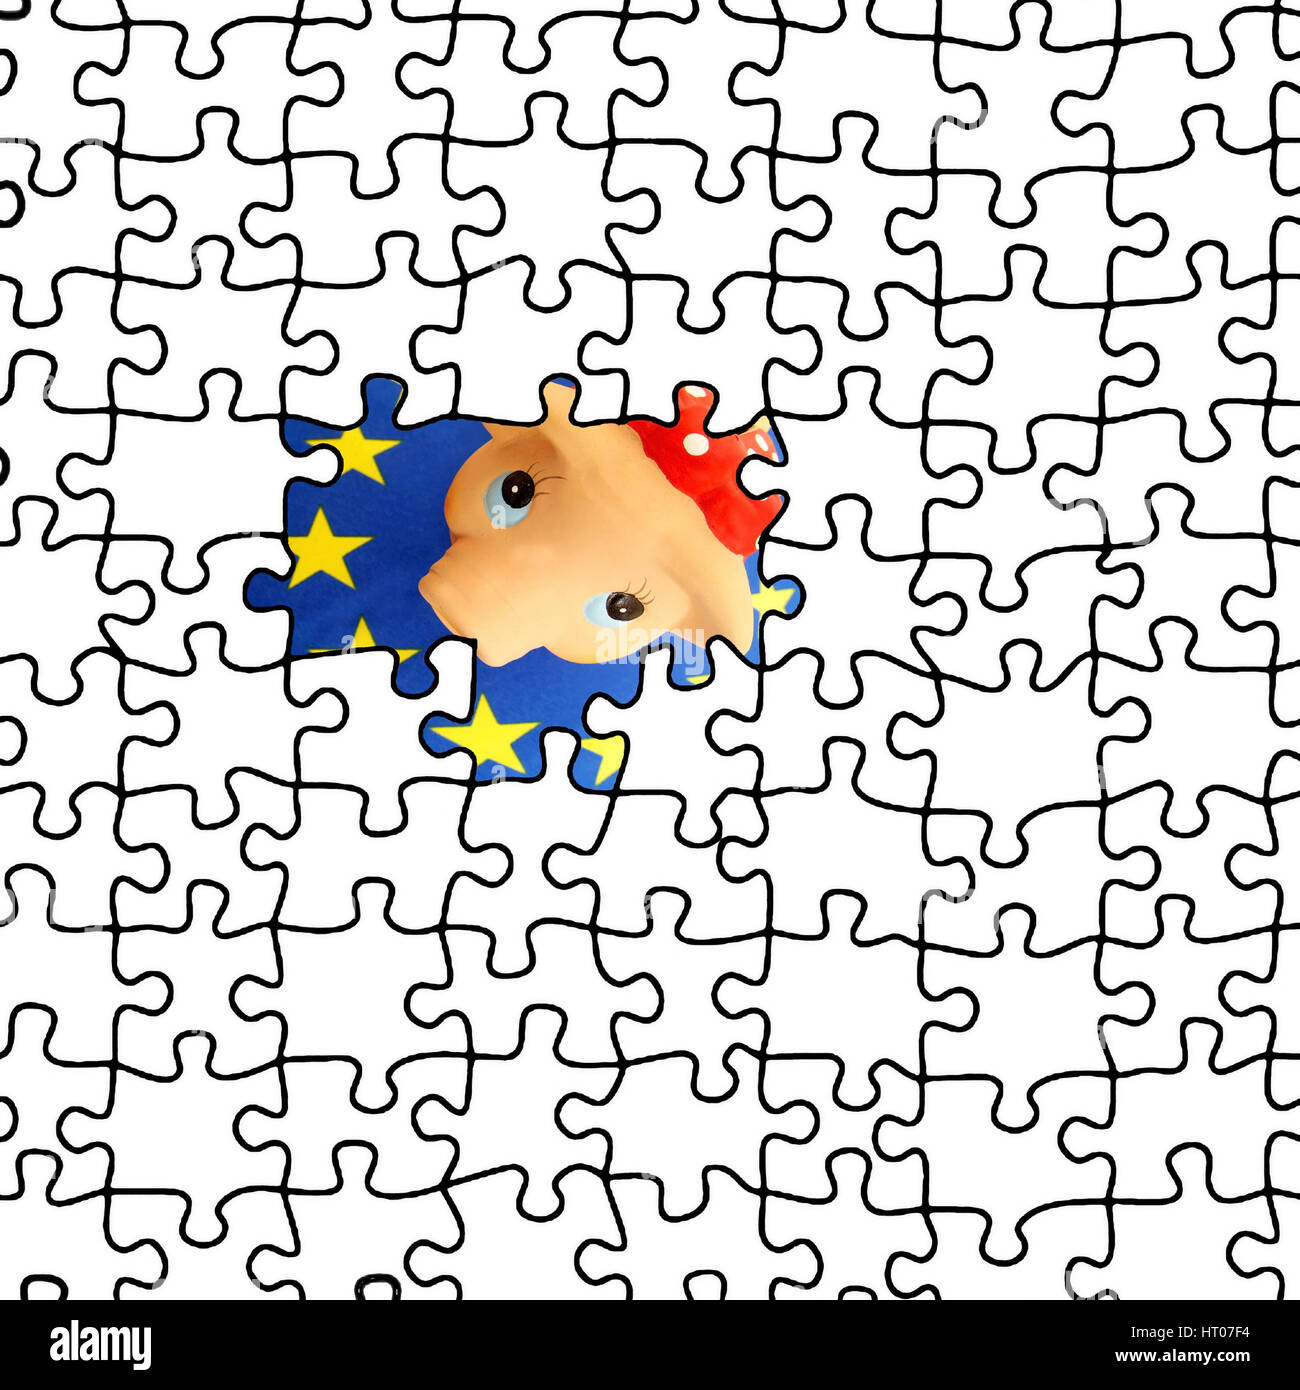 Euro-Sparschwein erscheint in einem Puzzle - Euro piggy bank appears in a puzzle Stock Photo